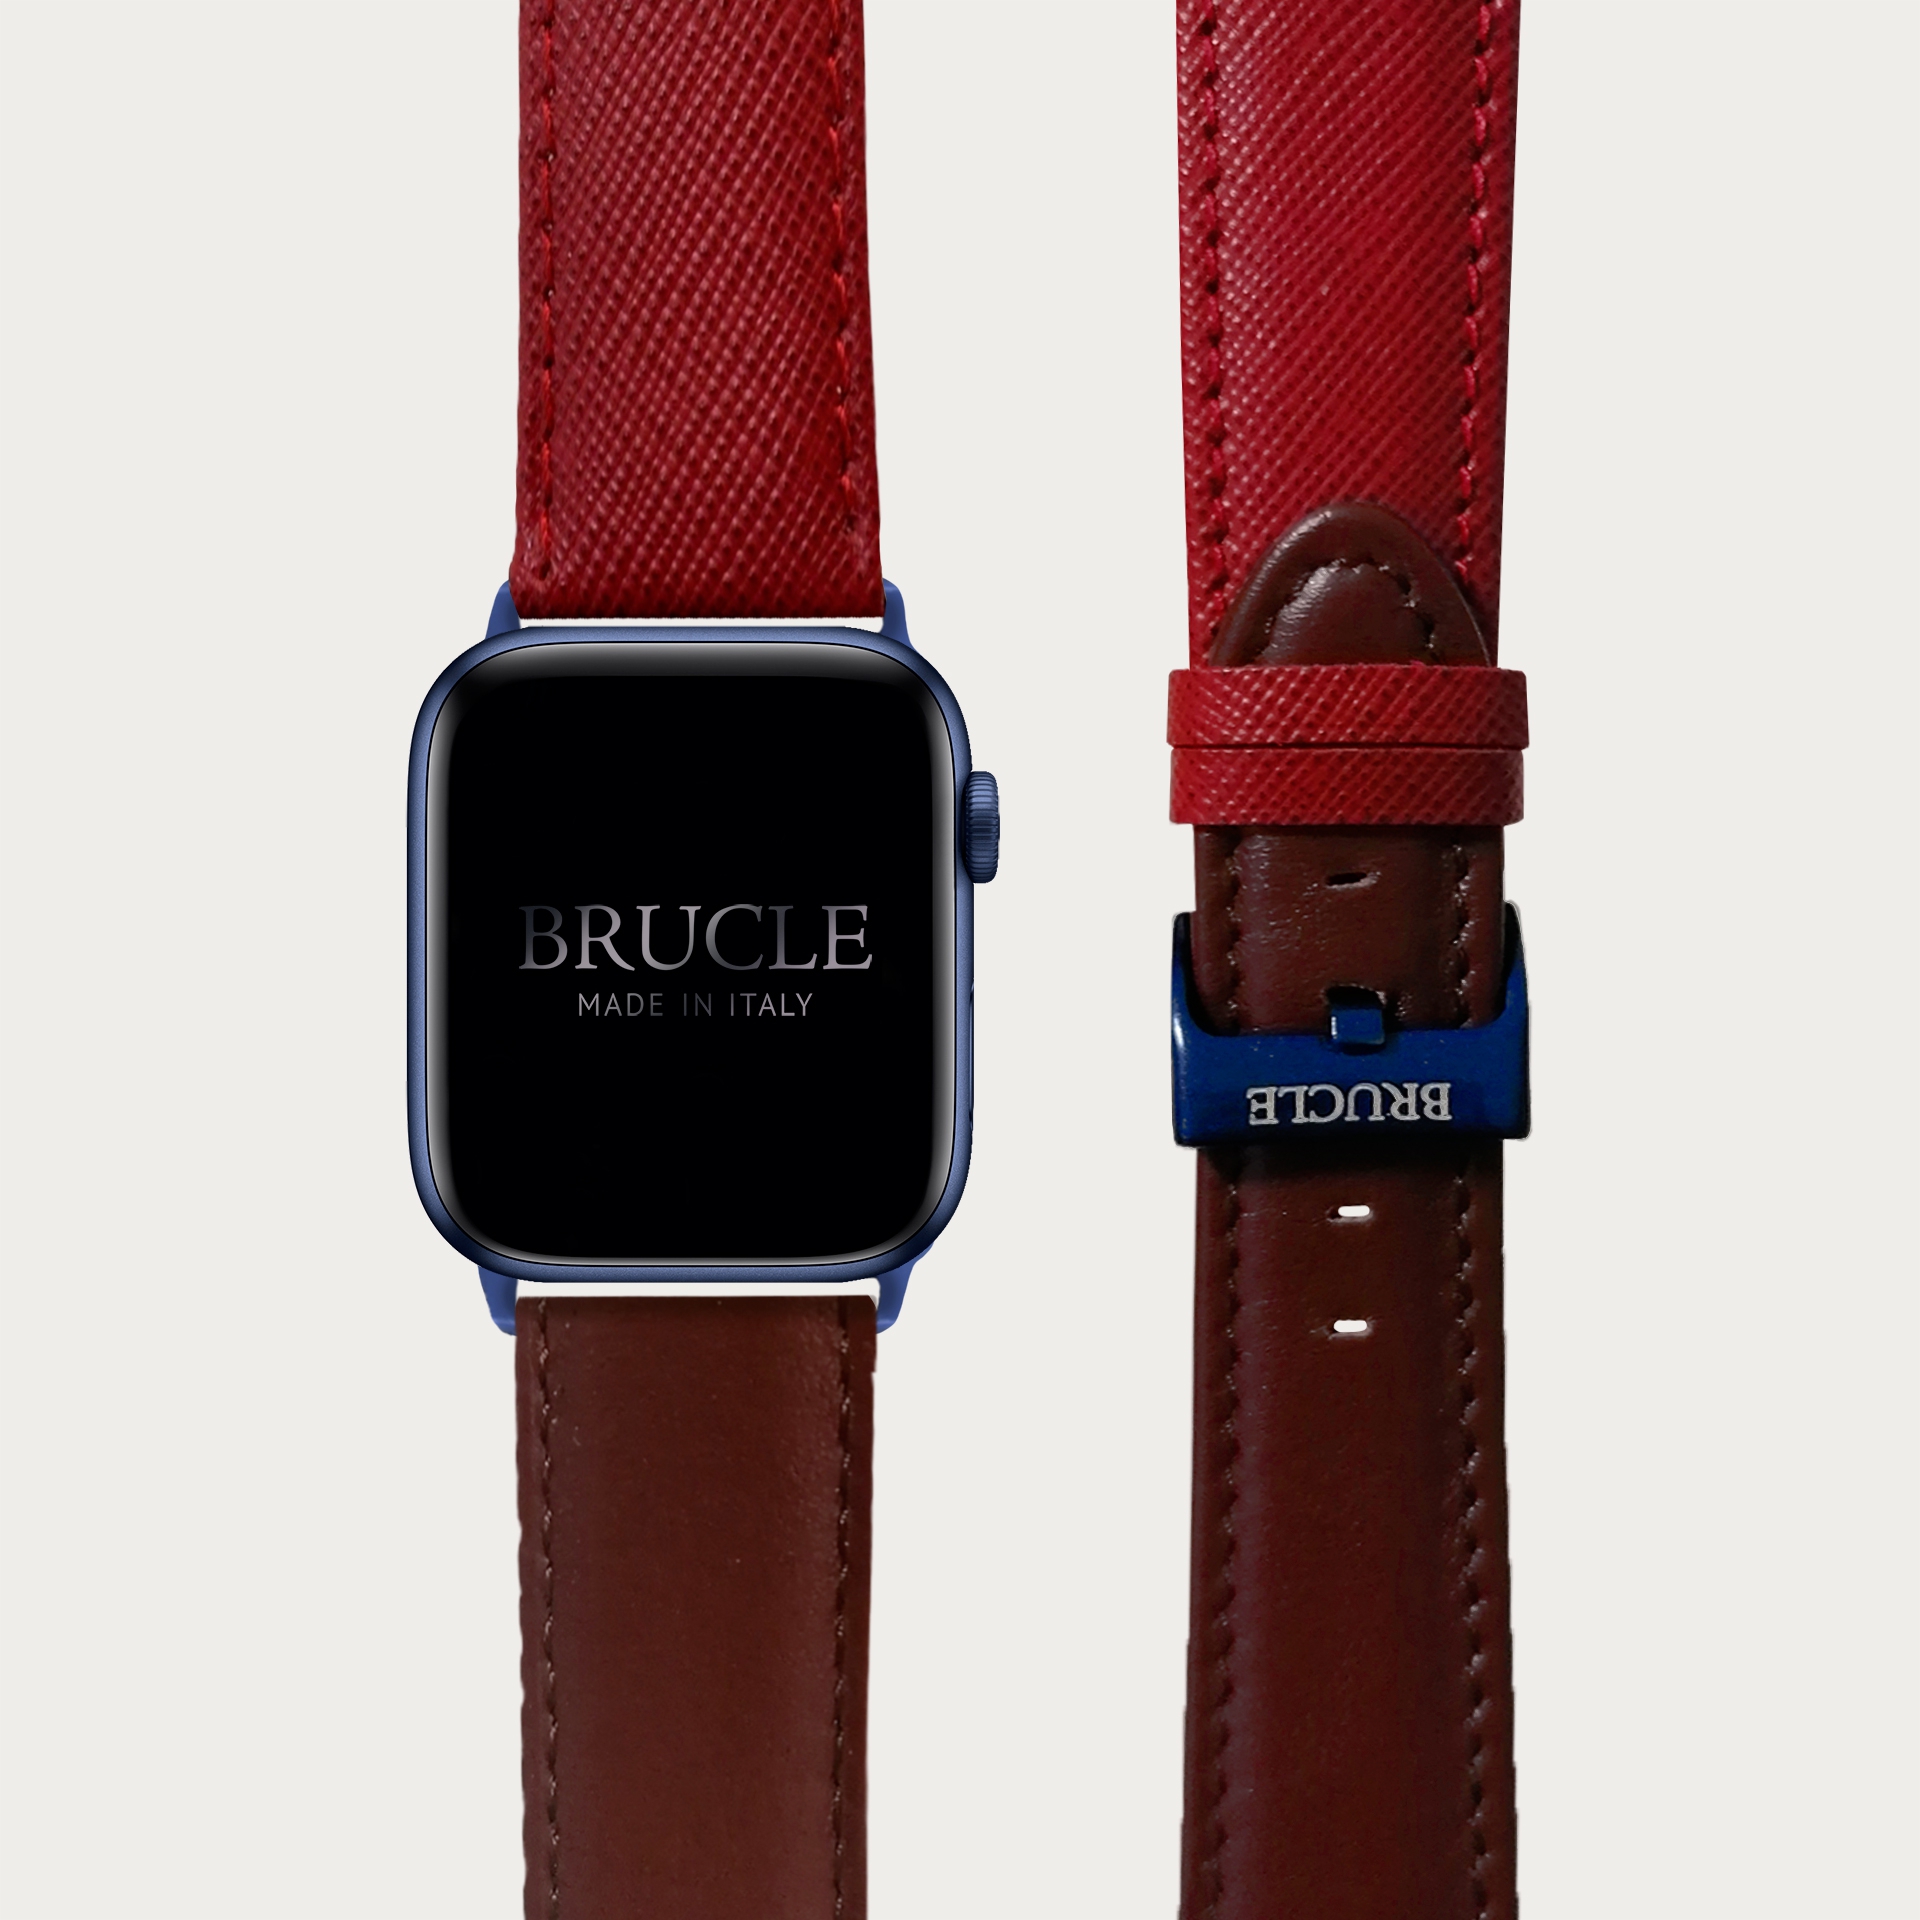 BRUCLE Cinturino bicolor in pelle stampata per orologio, Apple Watch e Samsung Galaxy Watch, saffiano rosso e marrone inglese